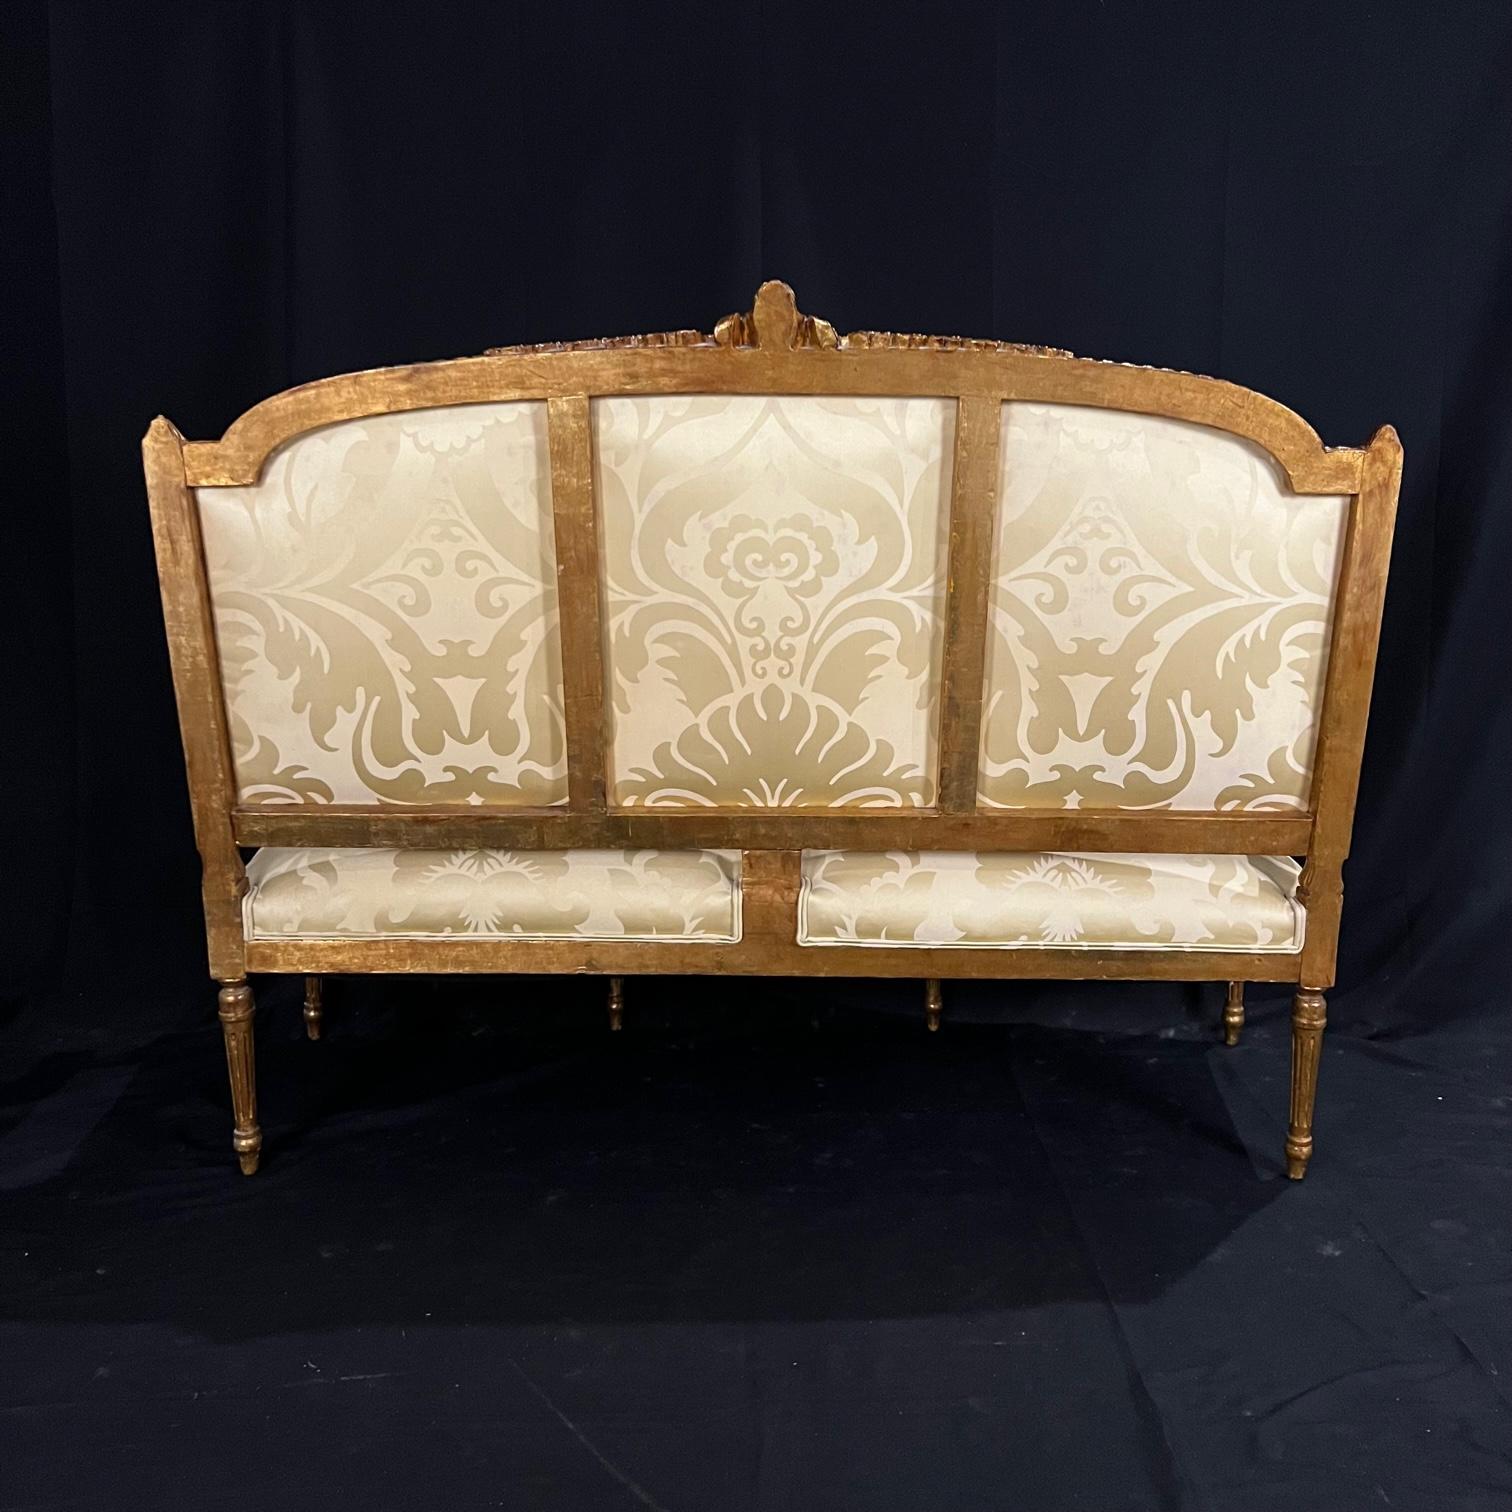 Canapé de style Louis XVI en bois sculpté et doré avec une belle tapisserie neuve. Le joli cadre présente des colonnes cannelées surmontées de feuilles d'acanthe. La base est composée de pieds cannelés et effilés. La ceinture et les traverses sont